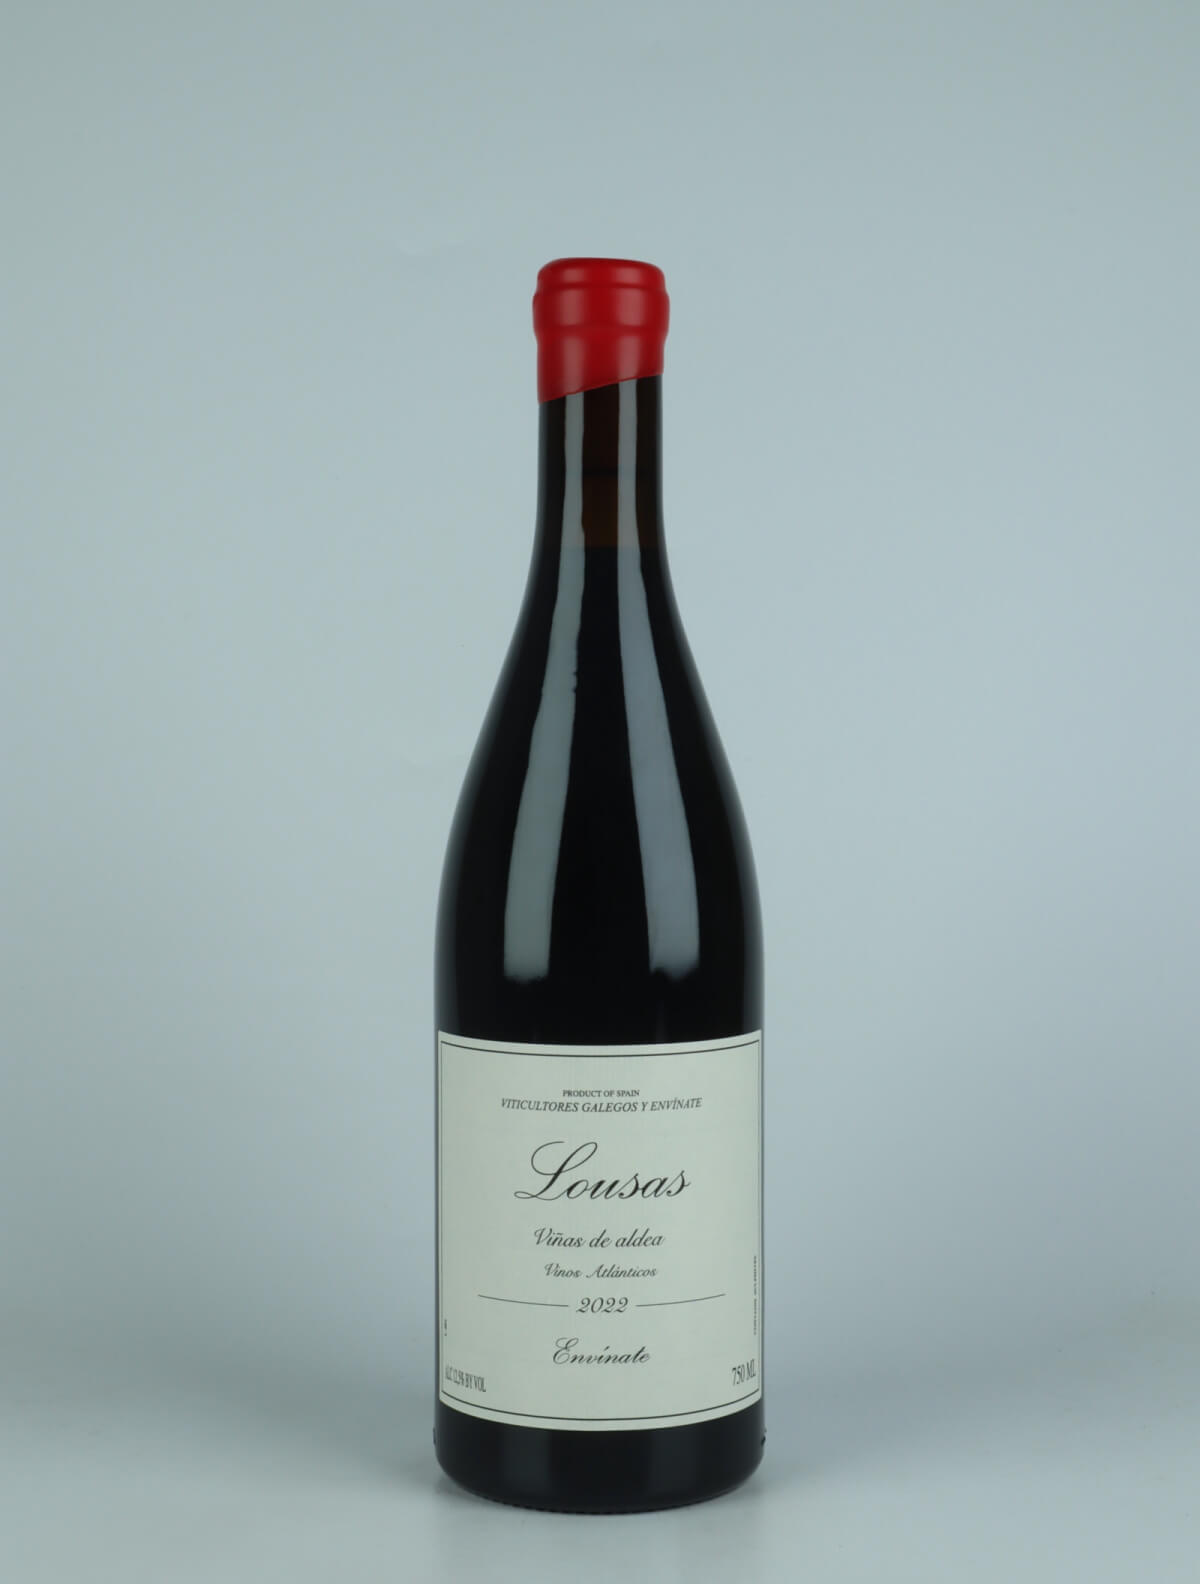 A bottle 2022 Lousas Viñas de Aldea - Ribeira Sacra Red wine from Envínate, Ribeira Sacra in Spain